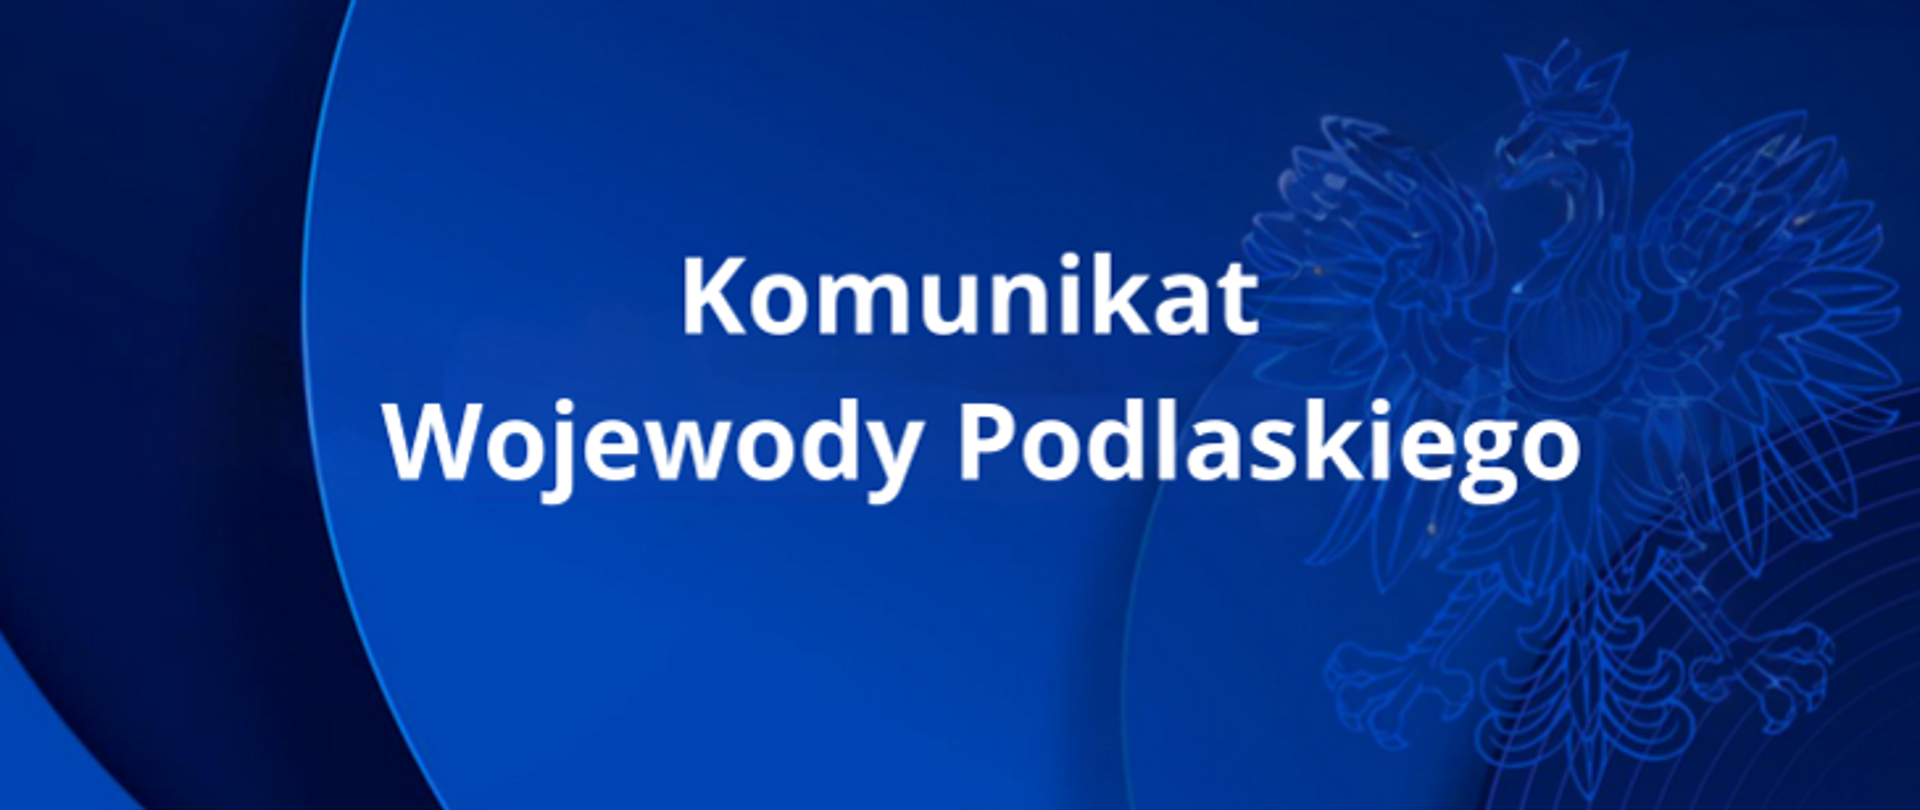 Komunikat_Wojewody_Podlaskiego